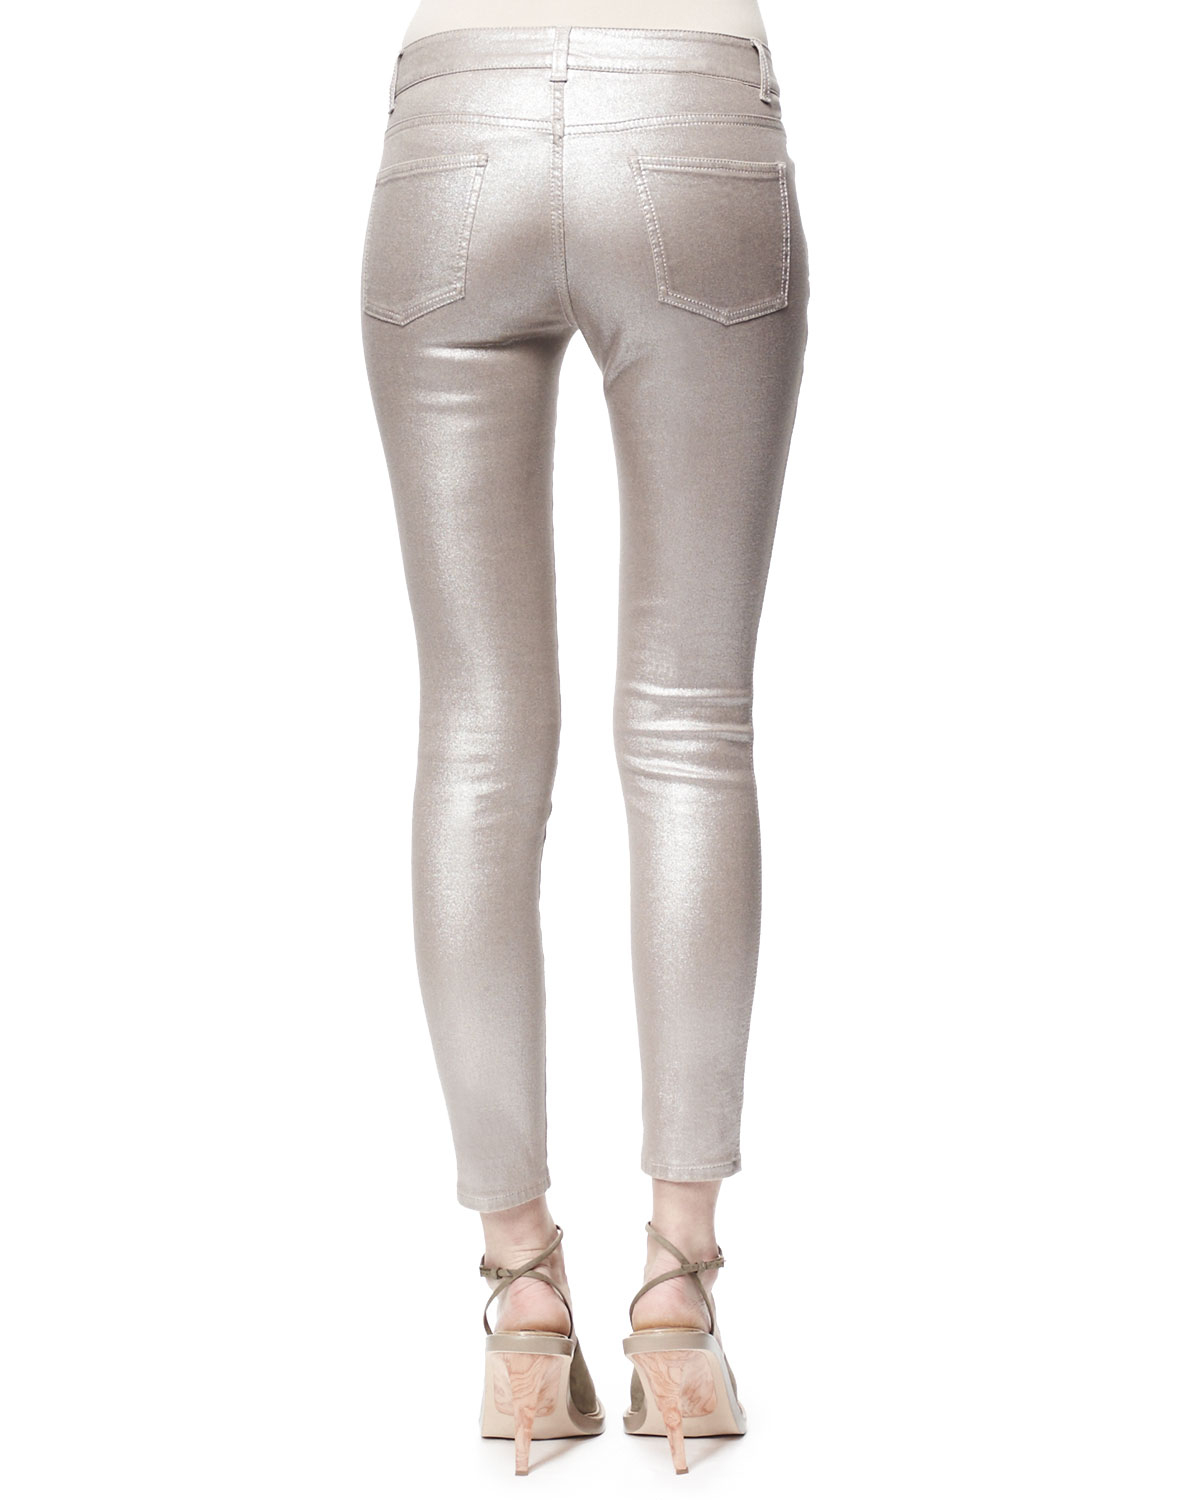 Lyst - Stella mccartney Metallic Skinny Ankle Grazer Jeans Silver in ...